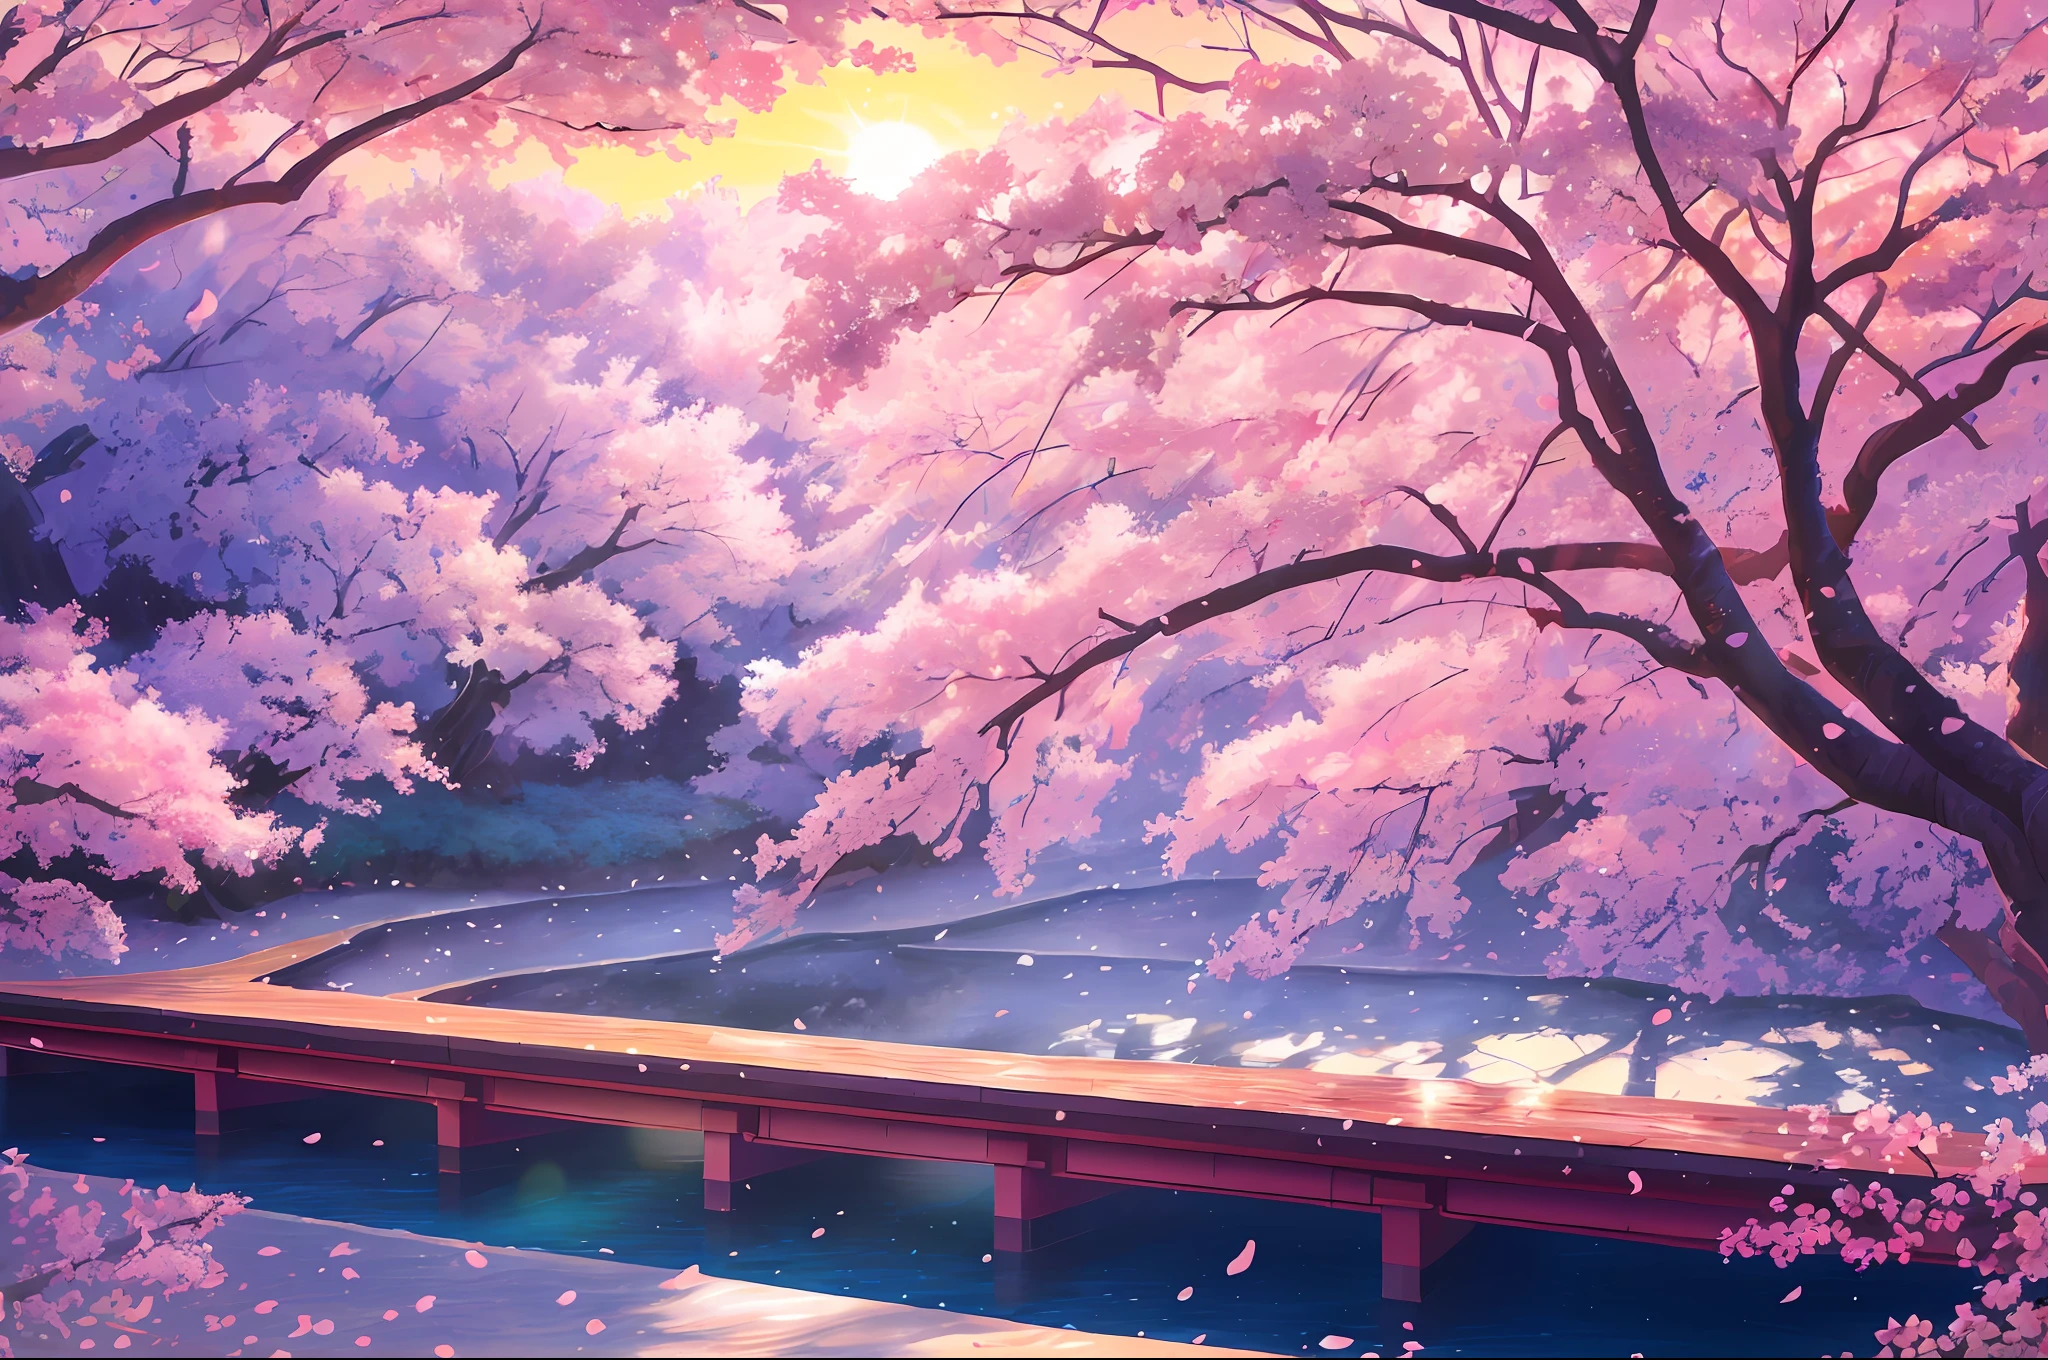 (Fotorrealista:1.2), iluminación：Hidenori Matsubara, Un vibrante paisaje de fantasía, pétalos de flor de cerezo cayendo, Iluminado por una cálida y acogedora puesta de sol., Sombras y texturas suaves., y un brillo sutil